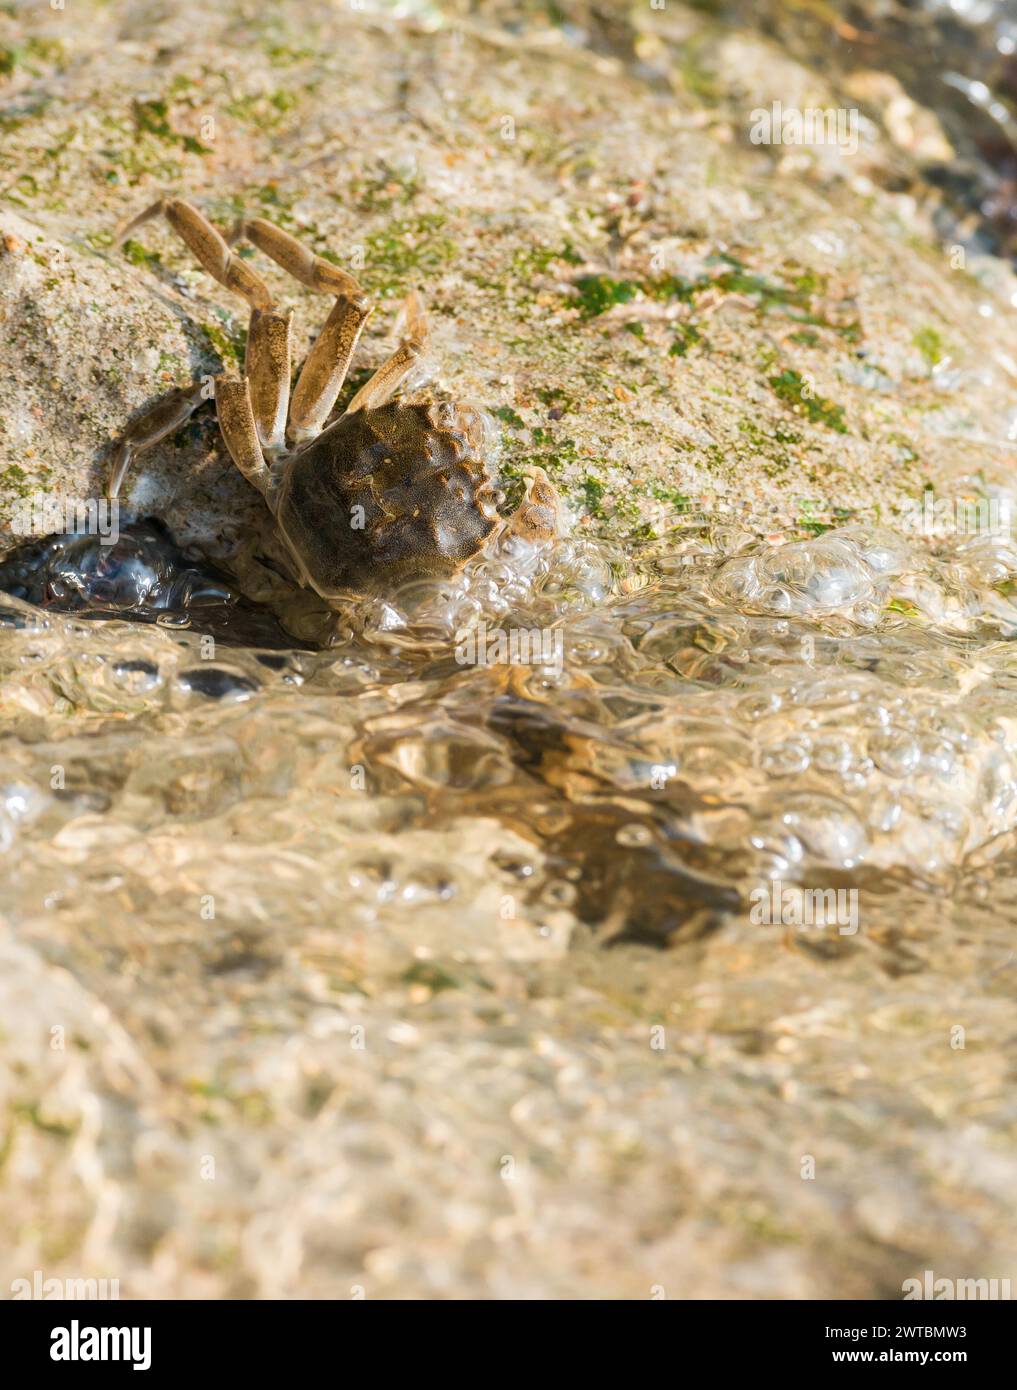 Crabe à mitaines chinoises (Eriocheir sinensis), espèce envahissante, néozoon, crabe, juvéniles accrochent à la stabilisation de la rive en béton, roches Banque D'Images